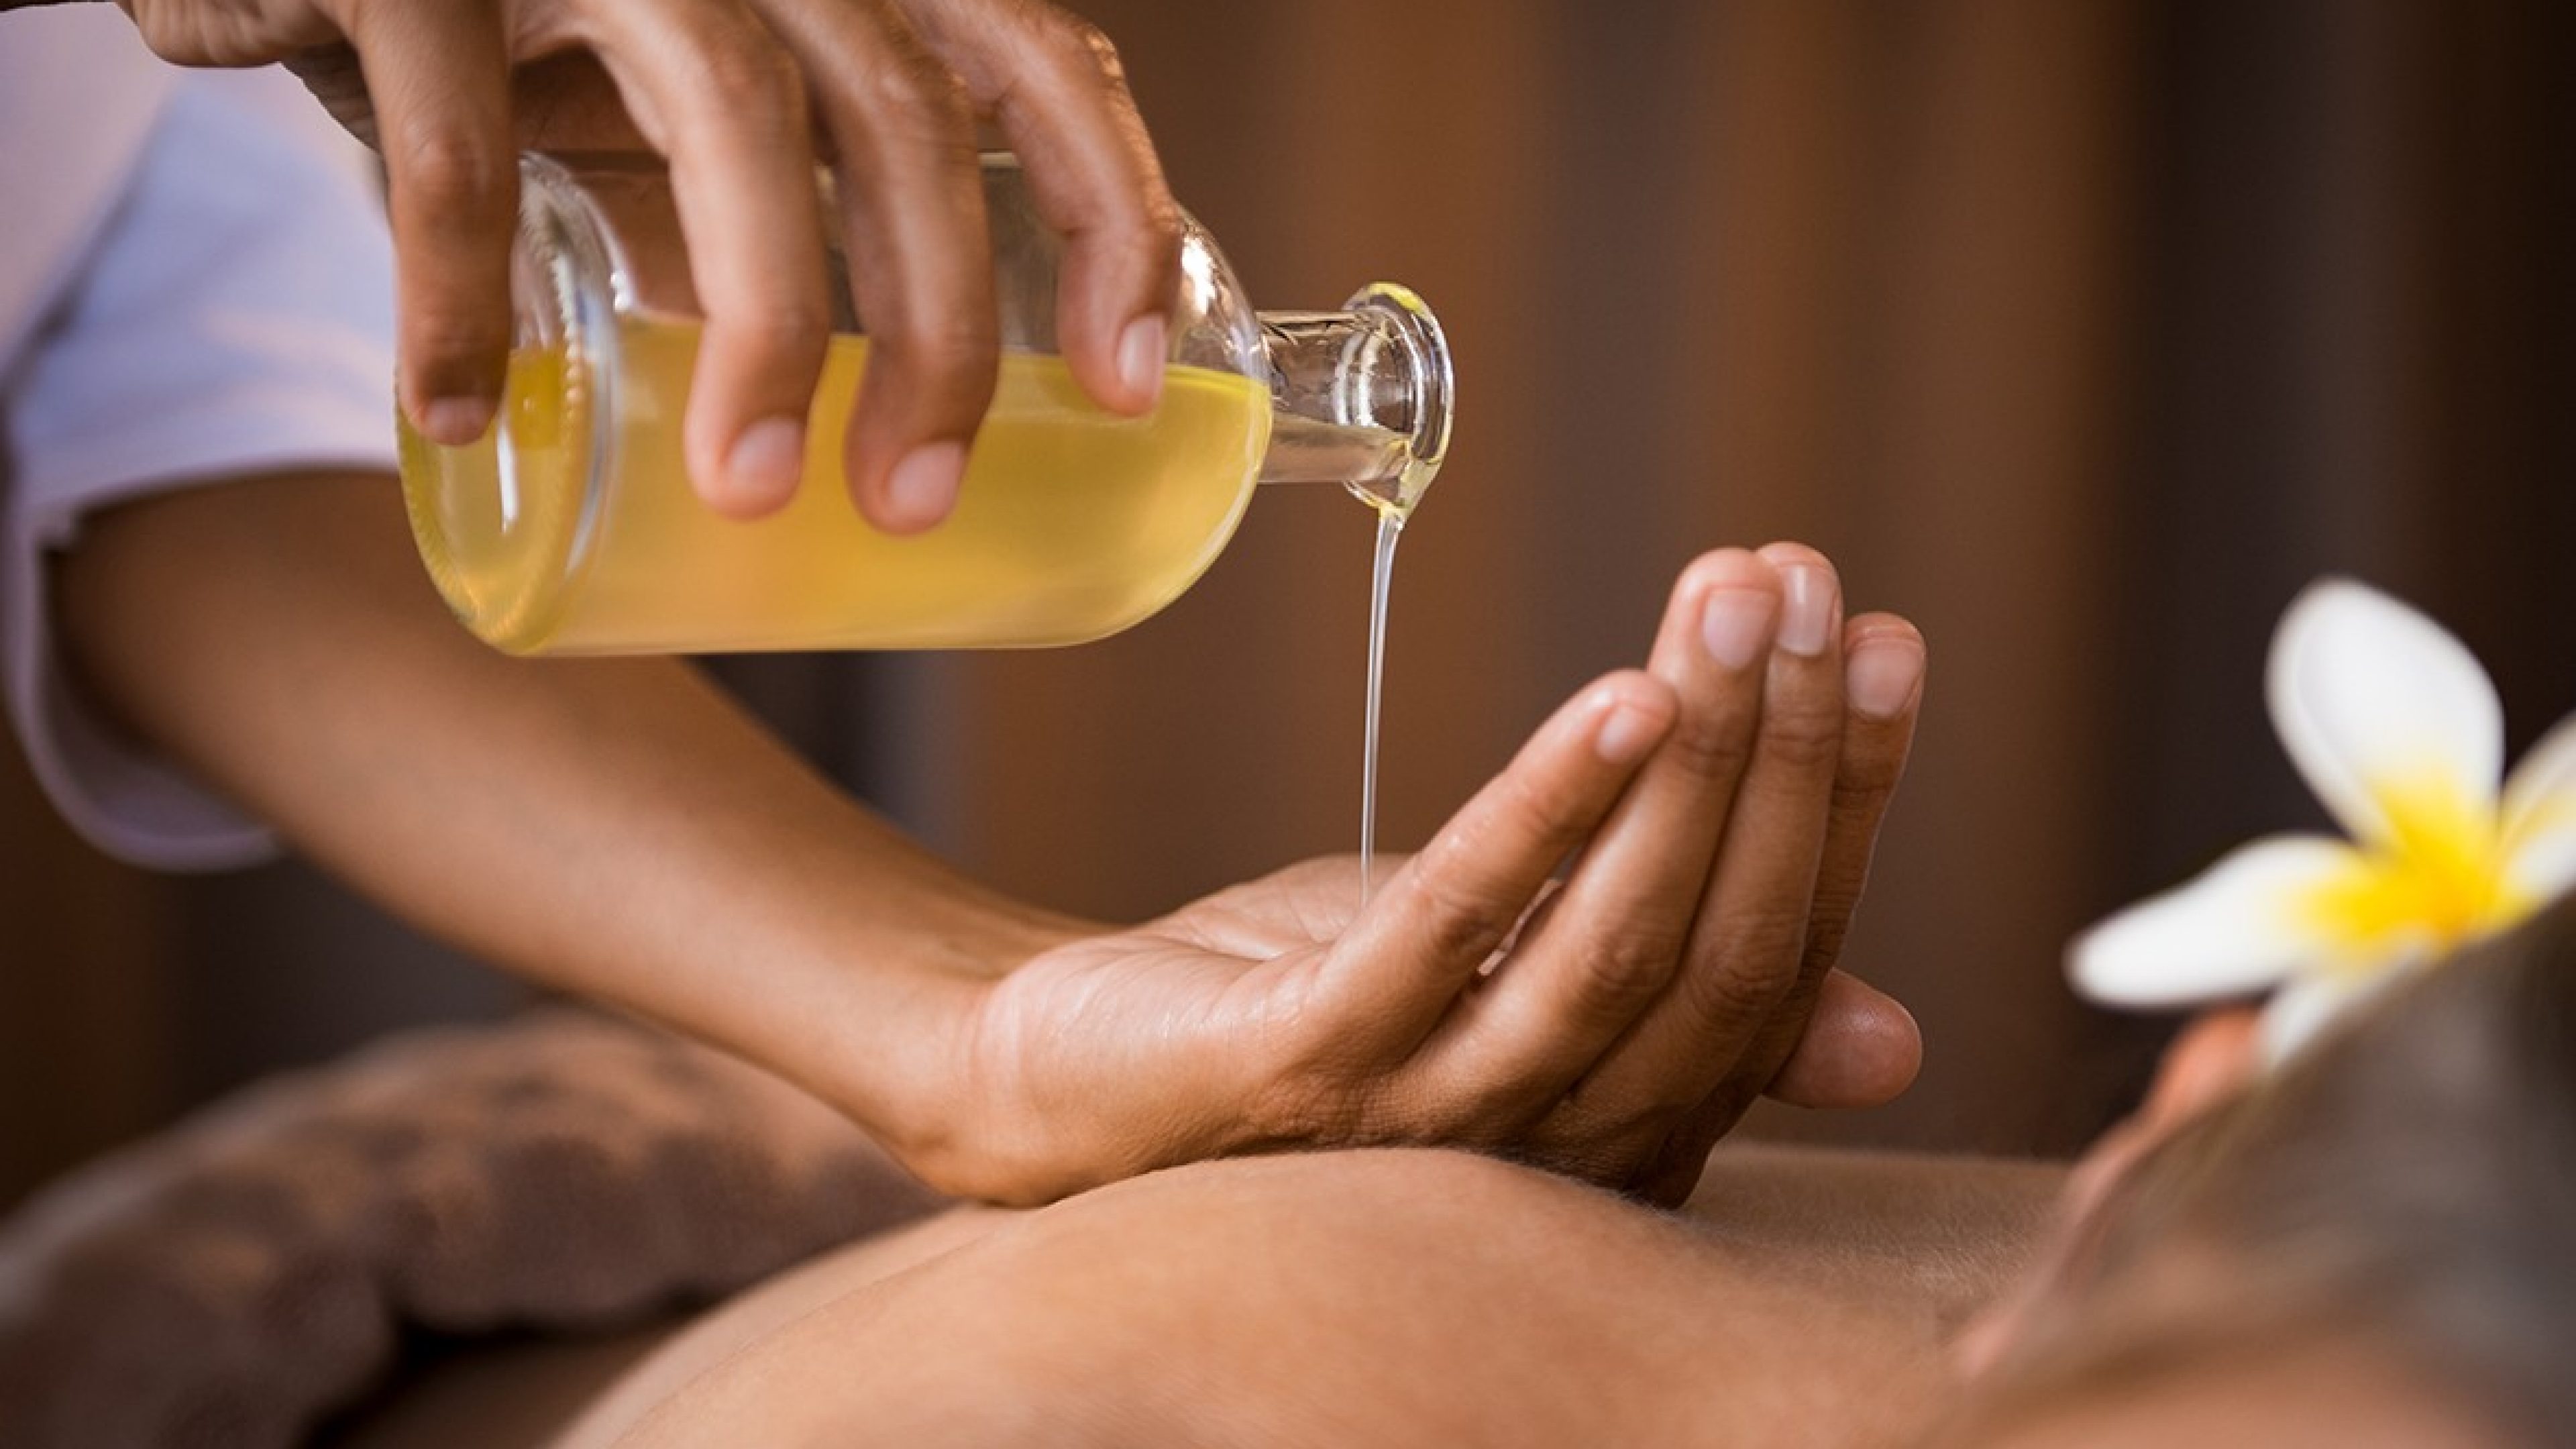 La massaggiatrice versa dell'olio per massaggi nella sua mano, che si trova sulla schiena di una donna.